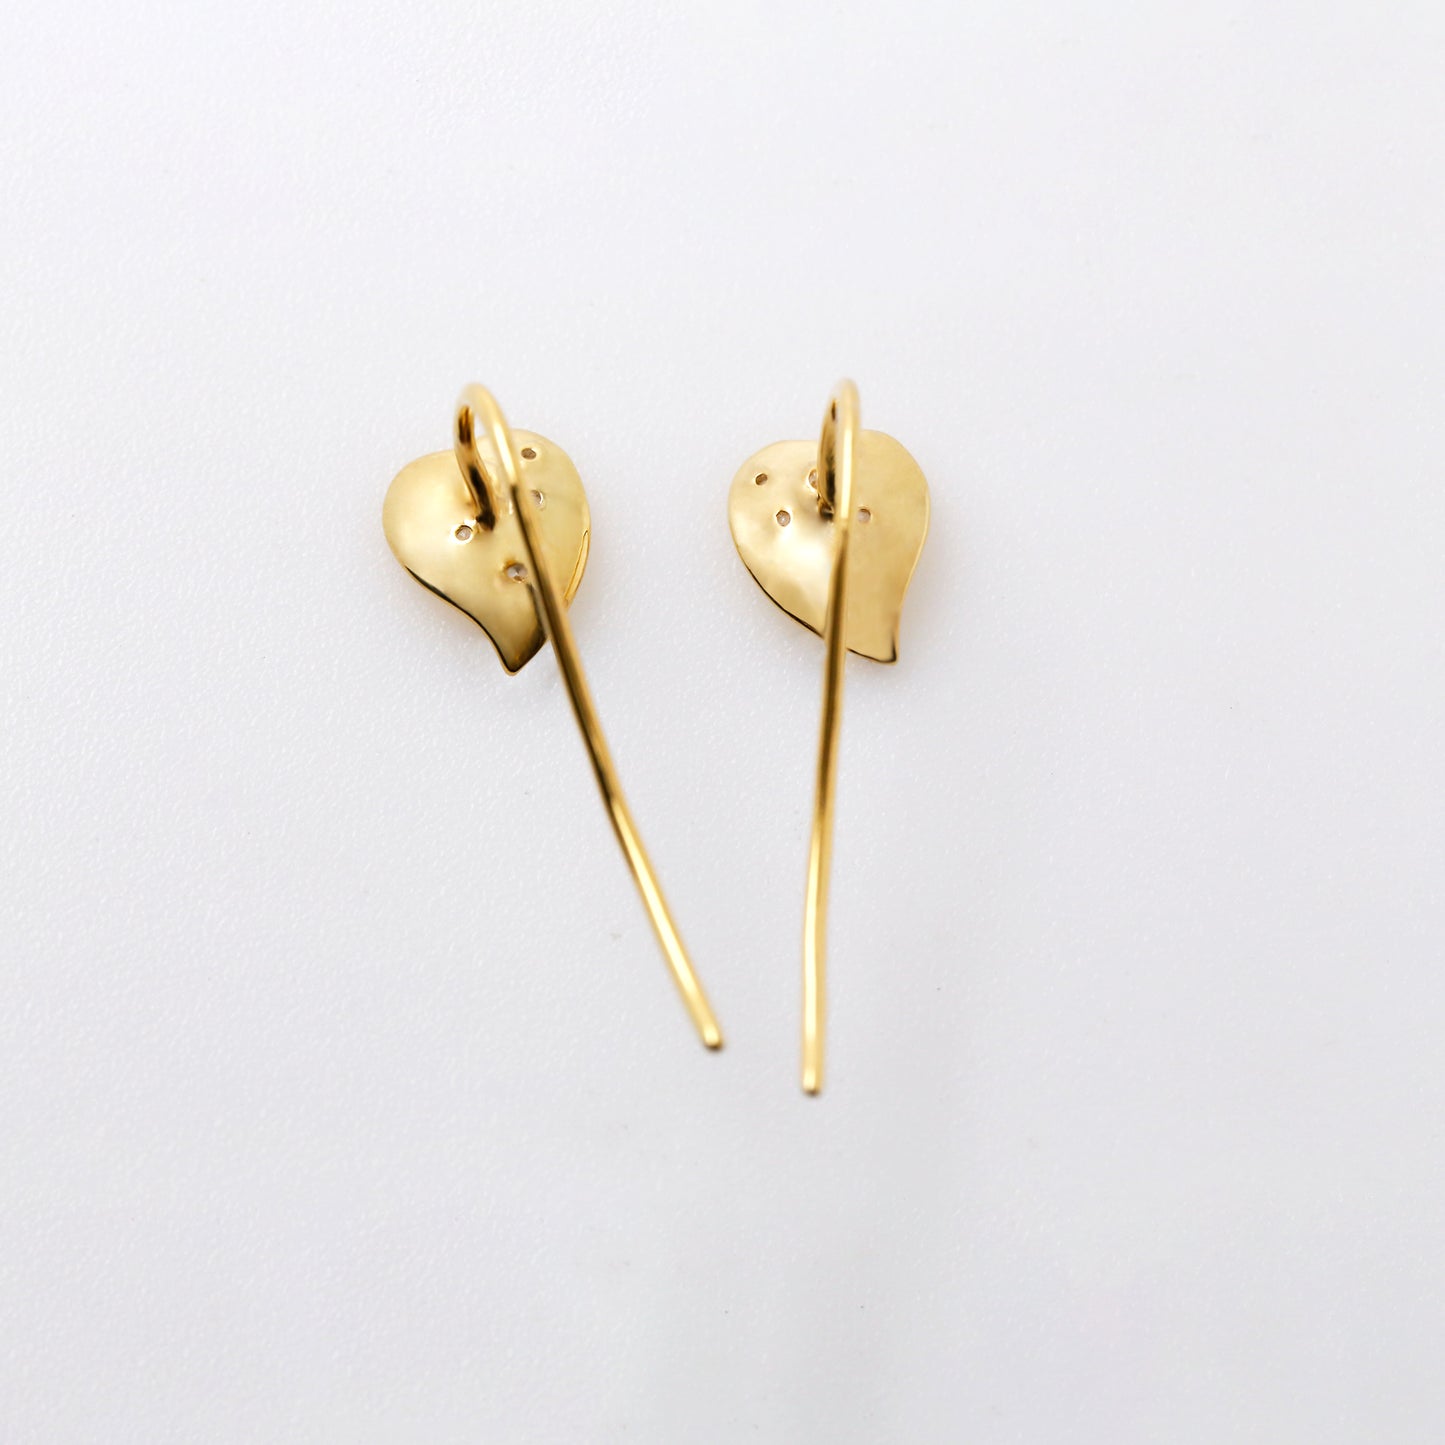 String of Hearts Earrings